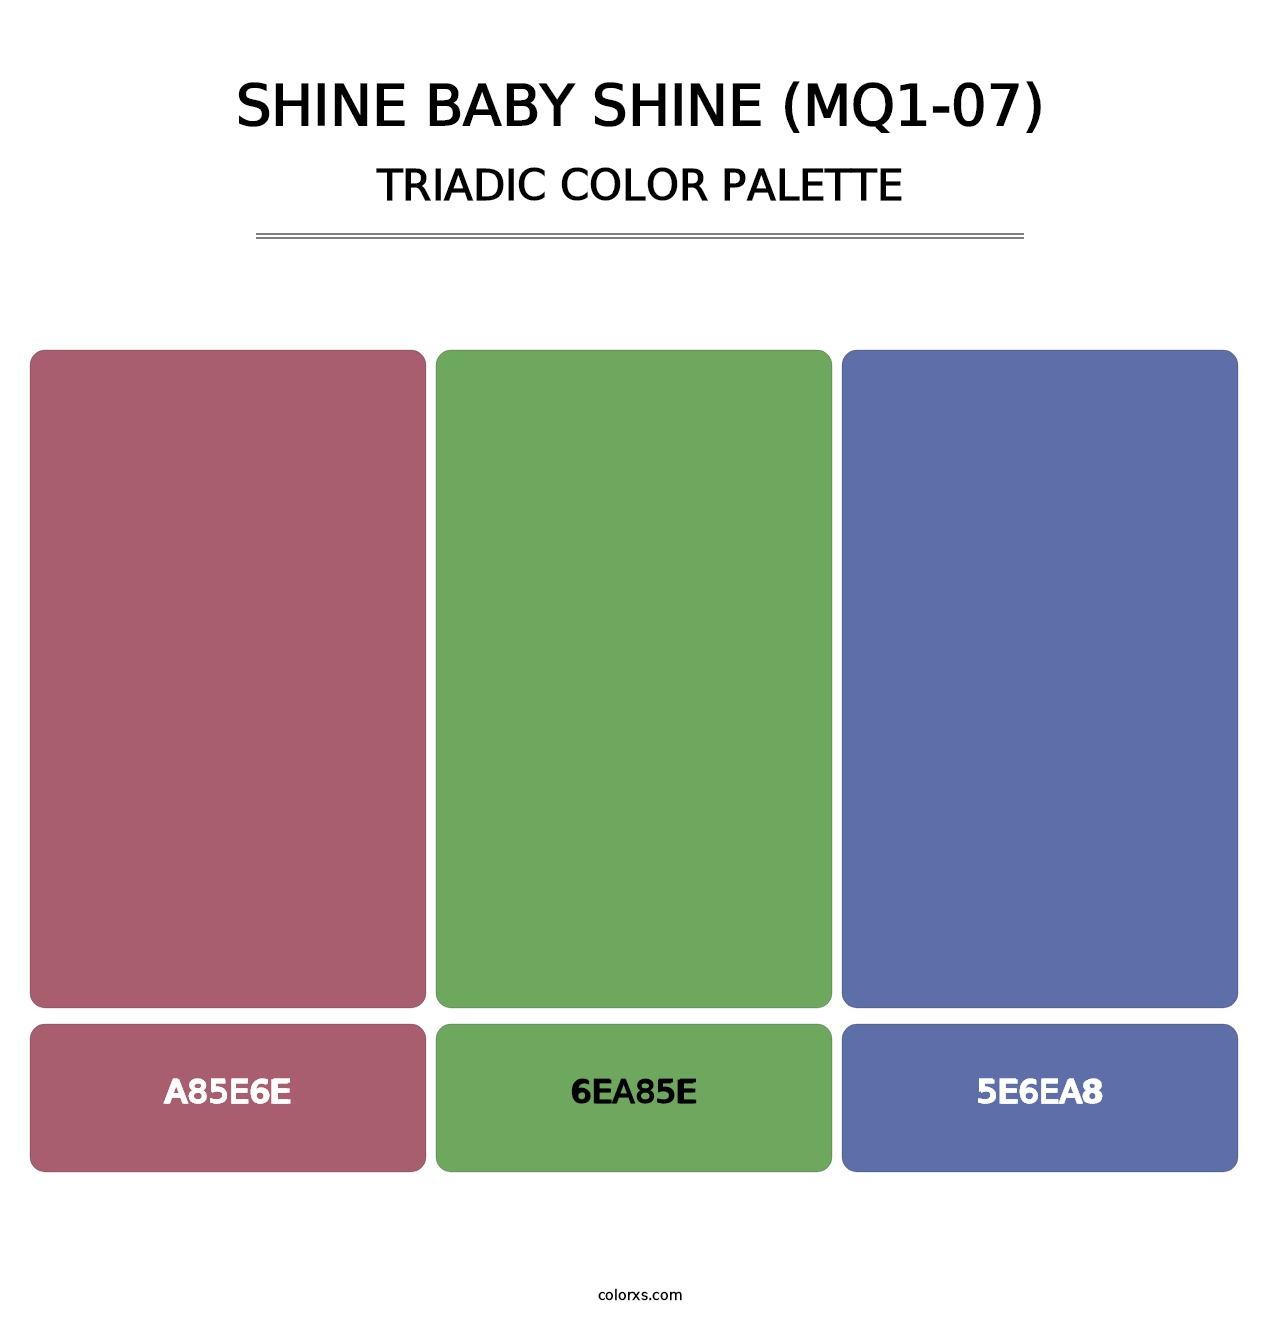 Shine Baby Shine (MQ1-07) - Triadic Color Palette